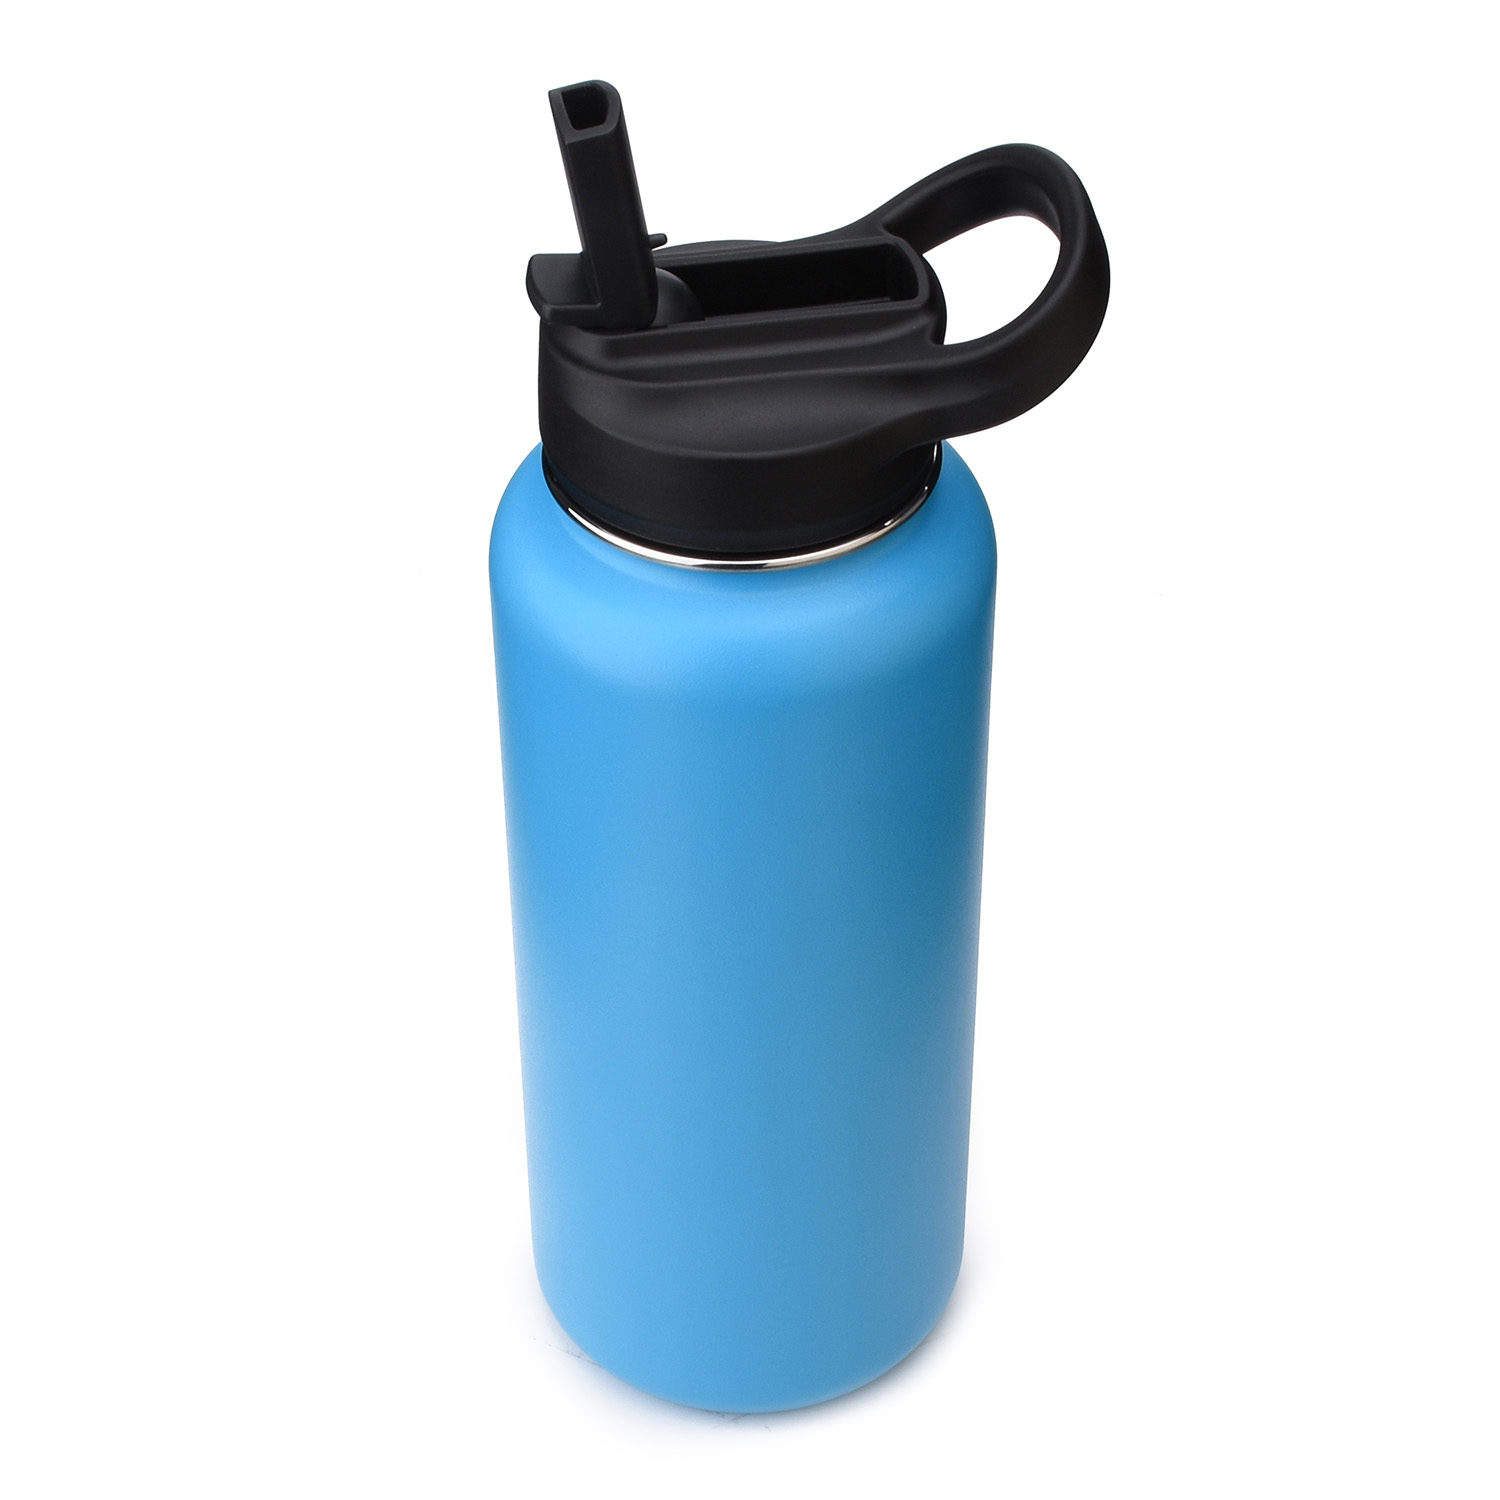 https://www.waterbottle.tech/wp-content/uploads/2020/08/wide-mouth-water-bottle-with-straw-lid-cap-s113292-2.jpg